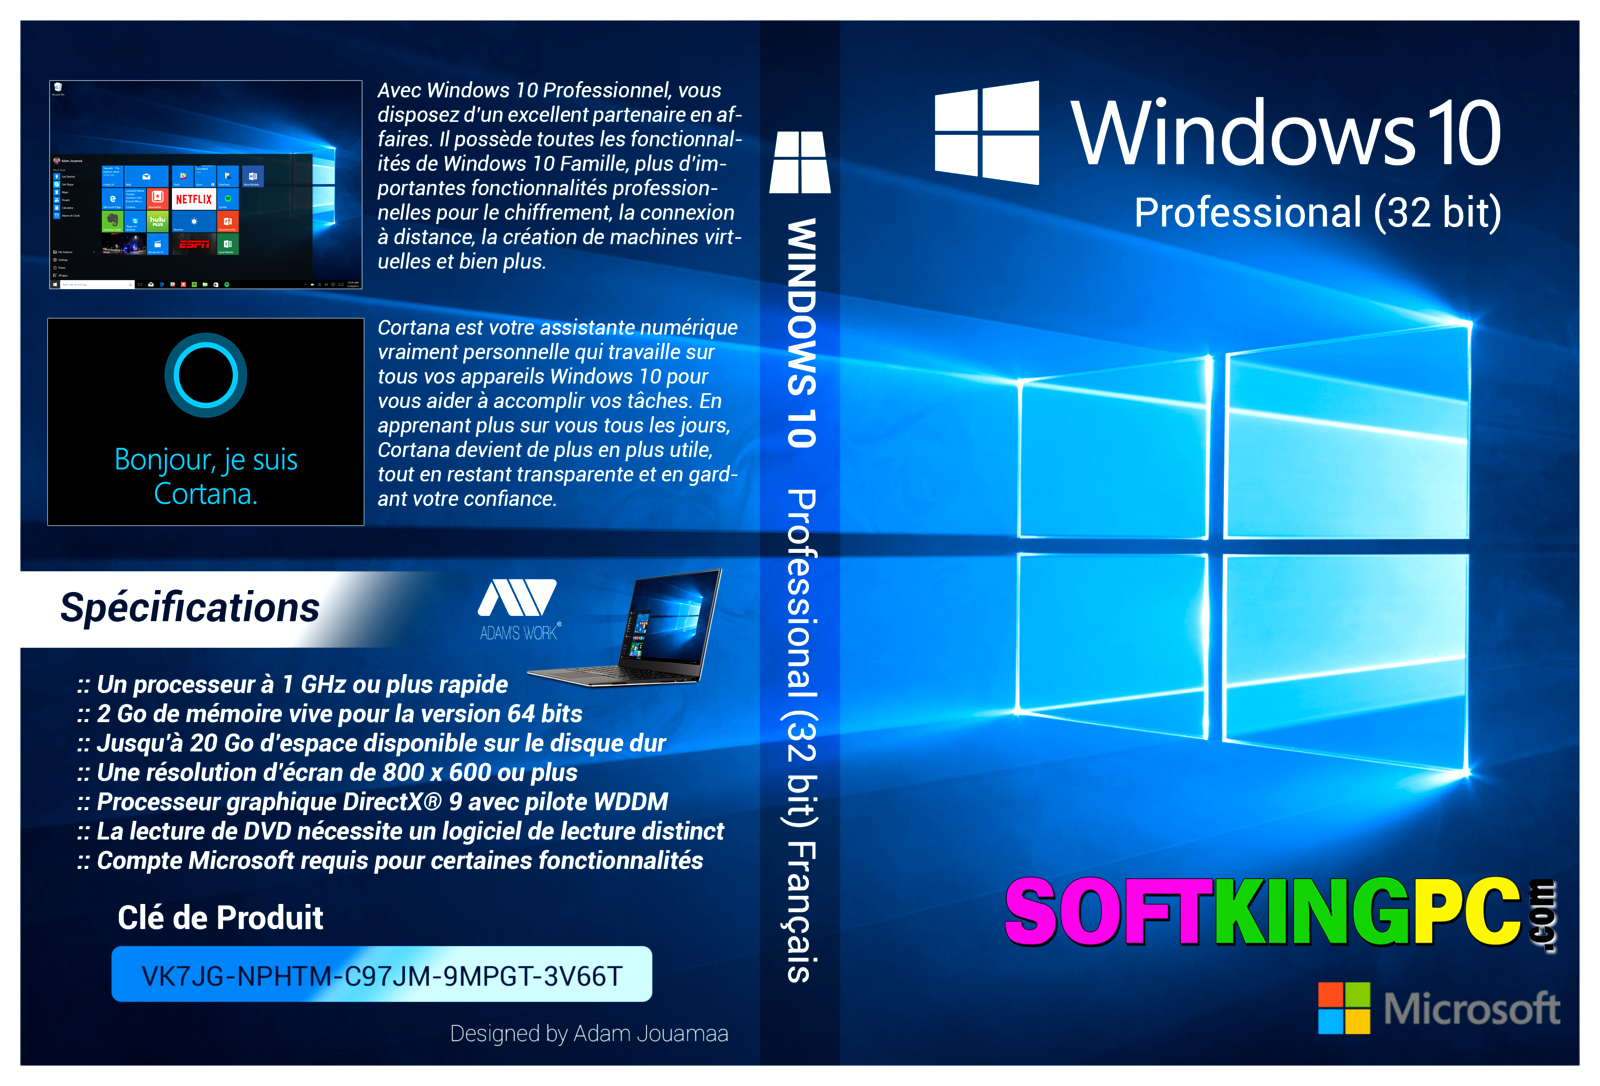 windows 10 pro 32 bit torrent download